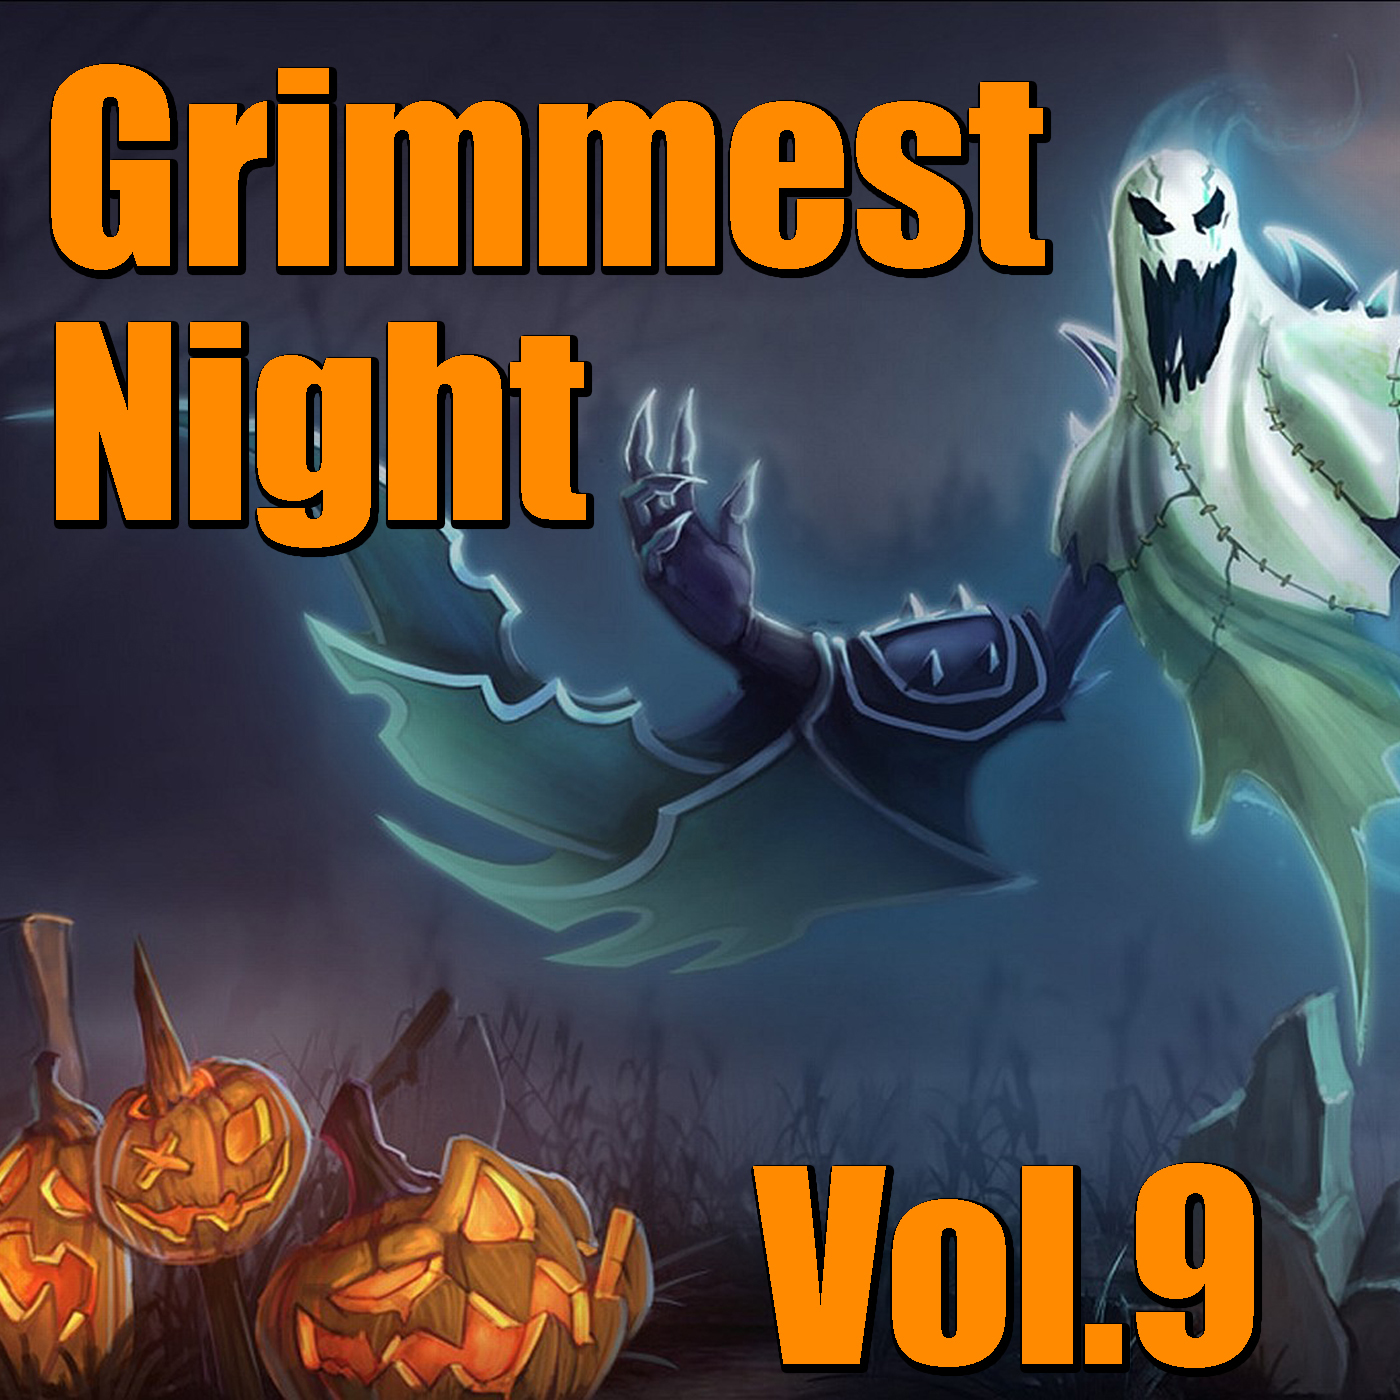 Grimmest Night, Vol. 9